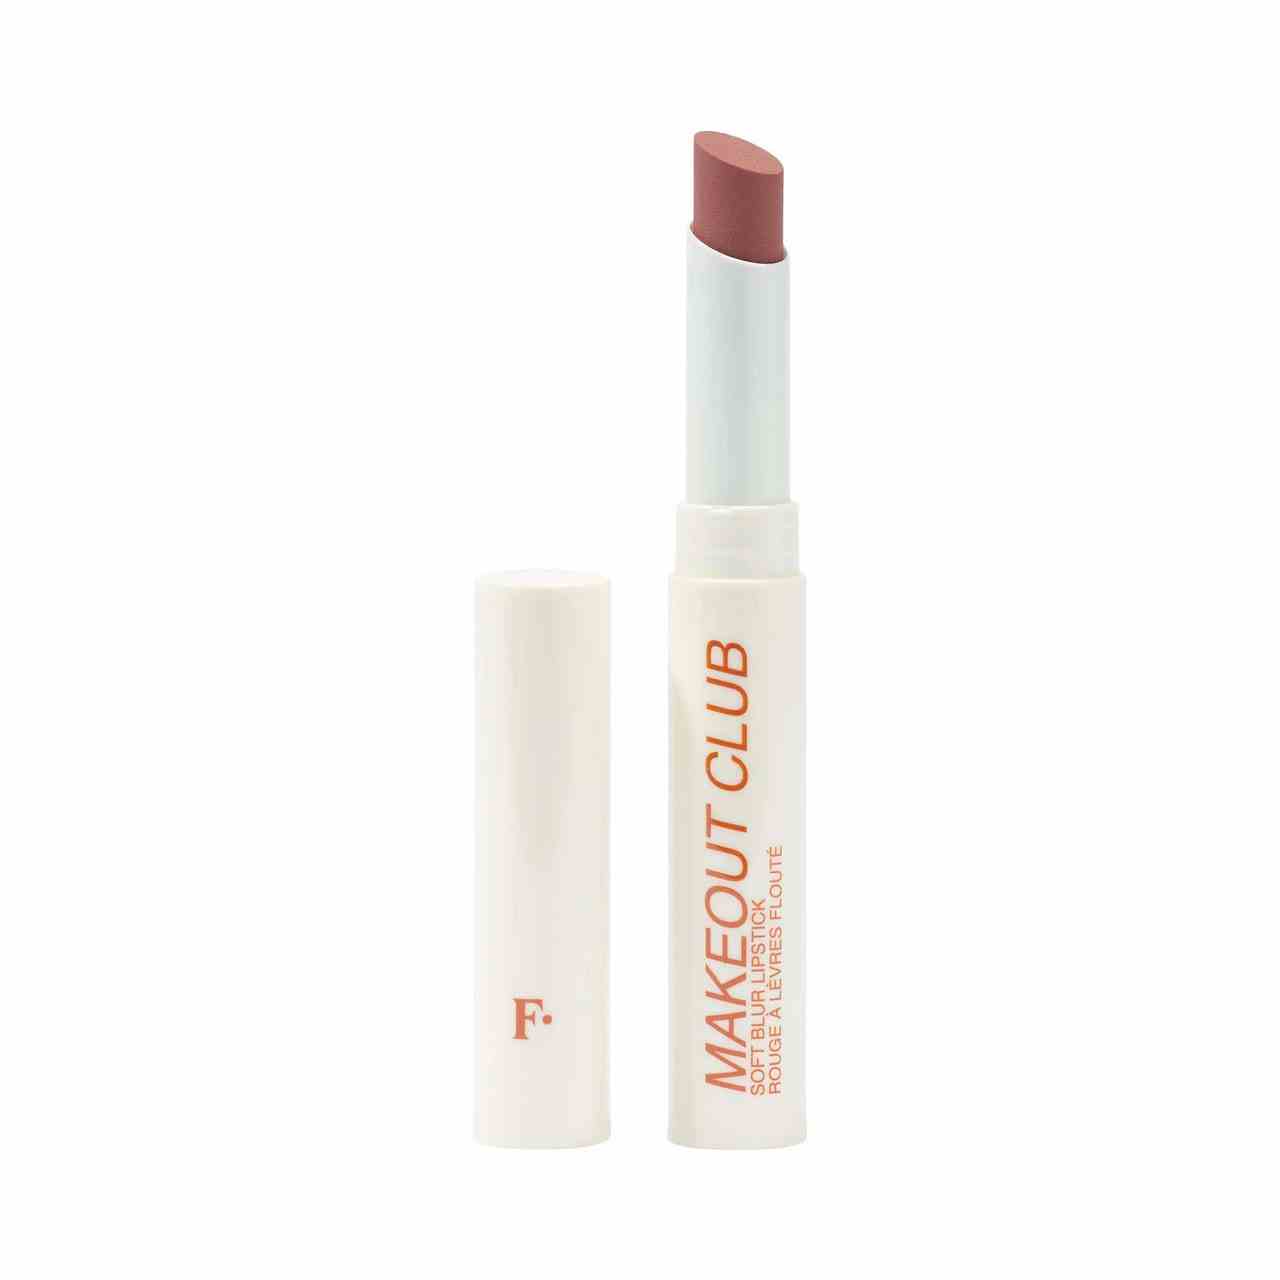 Freck Beauty Makeout Club Soft Blur Lipstick weiße Tube mit Nude-Lippenstift auf weißem Hintergrund